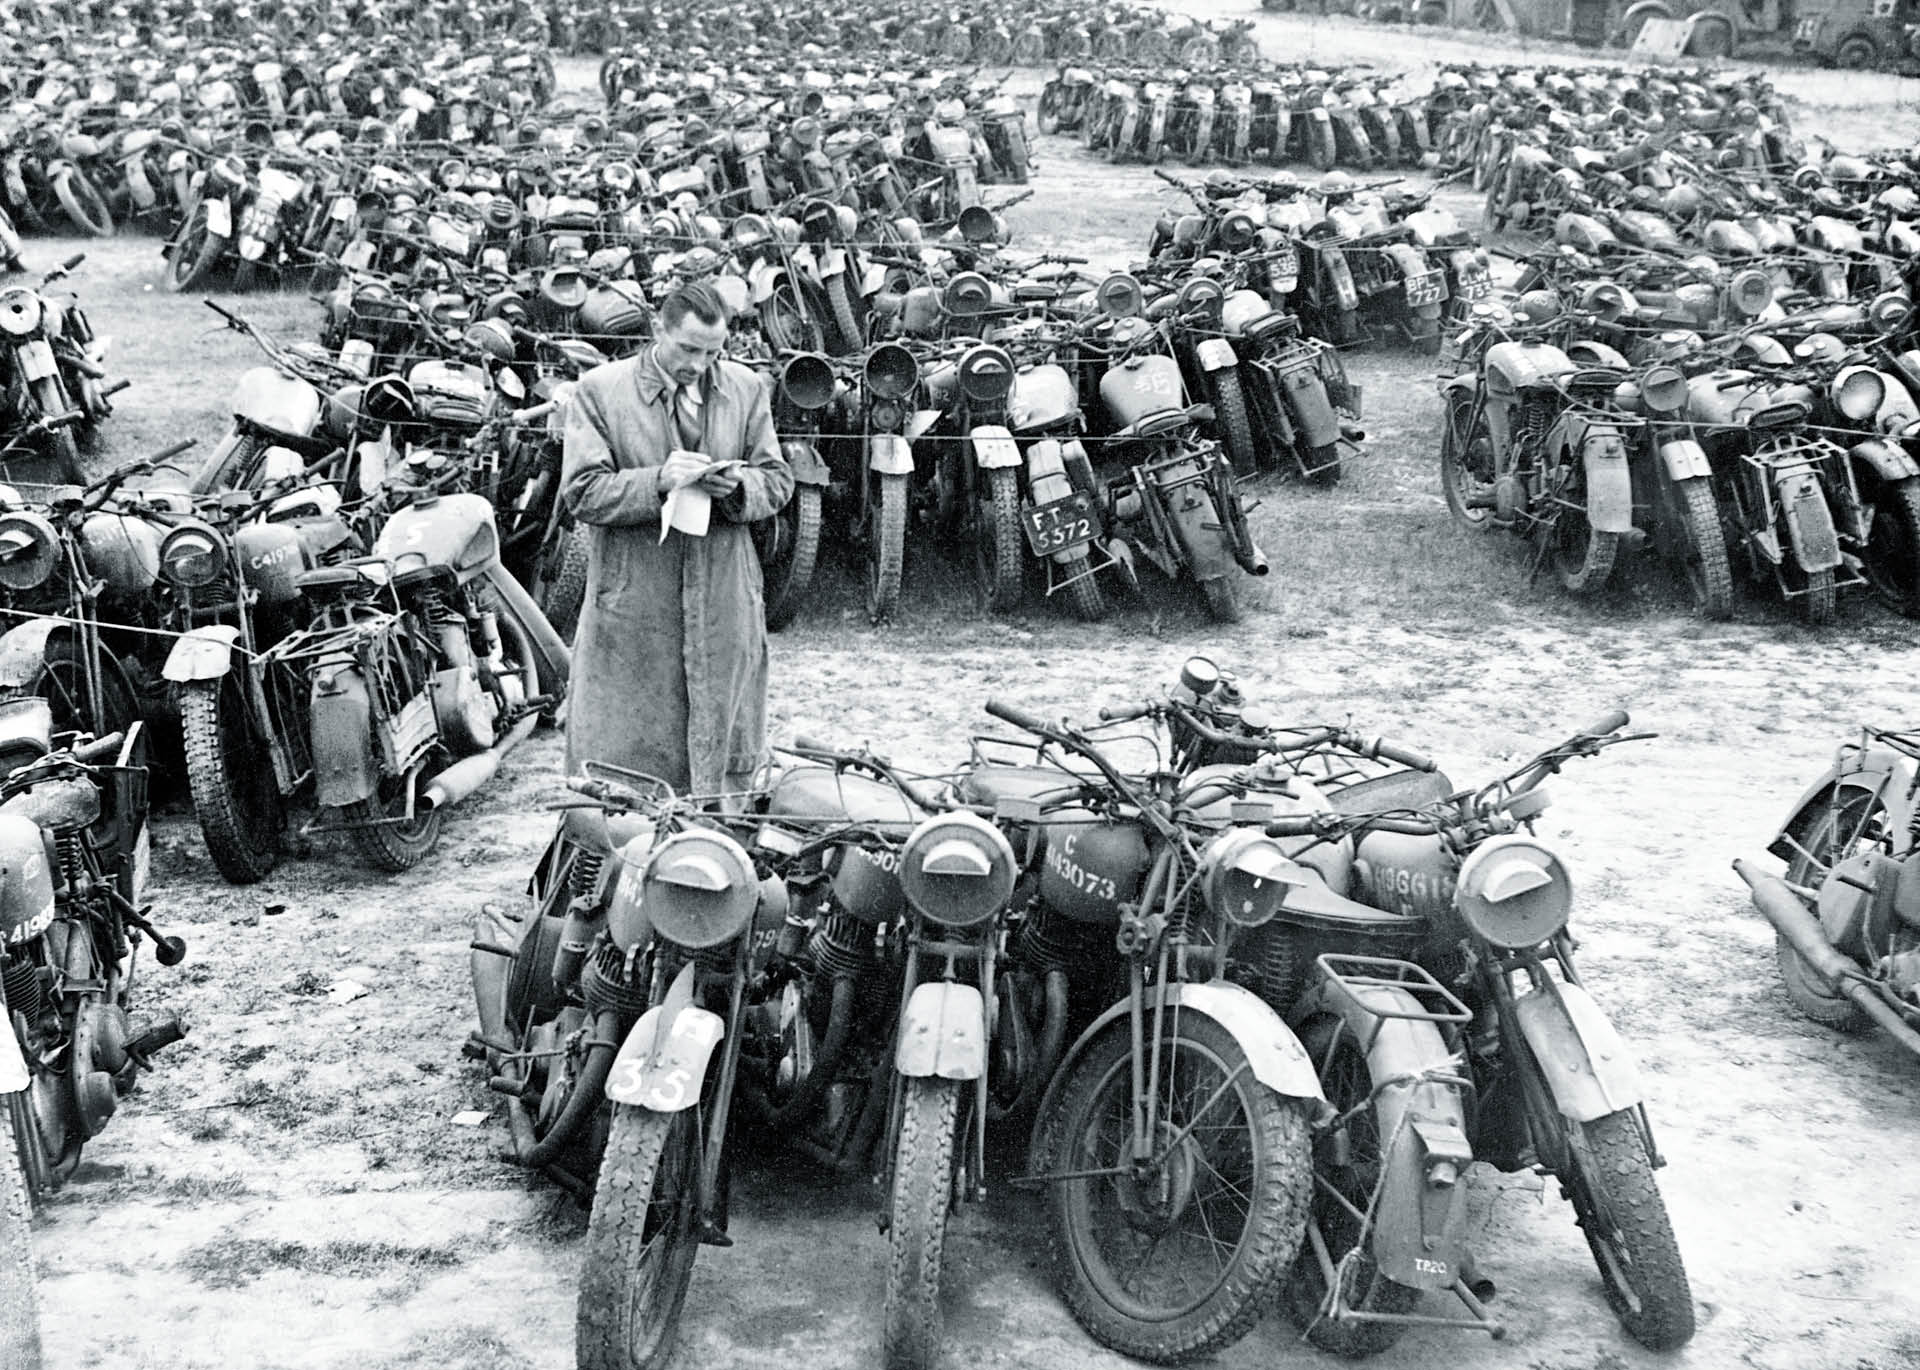 Inwentaryzacja motocykli przeznaczonych na złom, koniec II wojny światowej, Great Missenden, Anglia